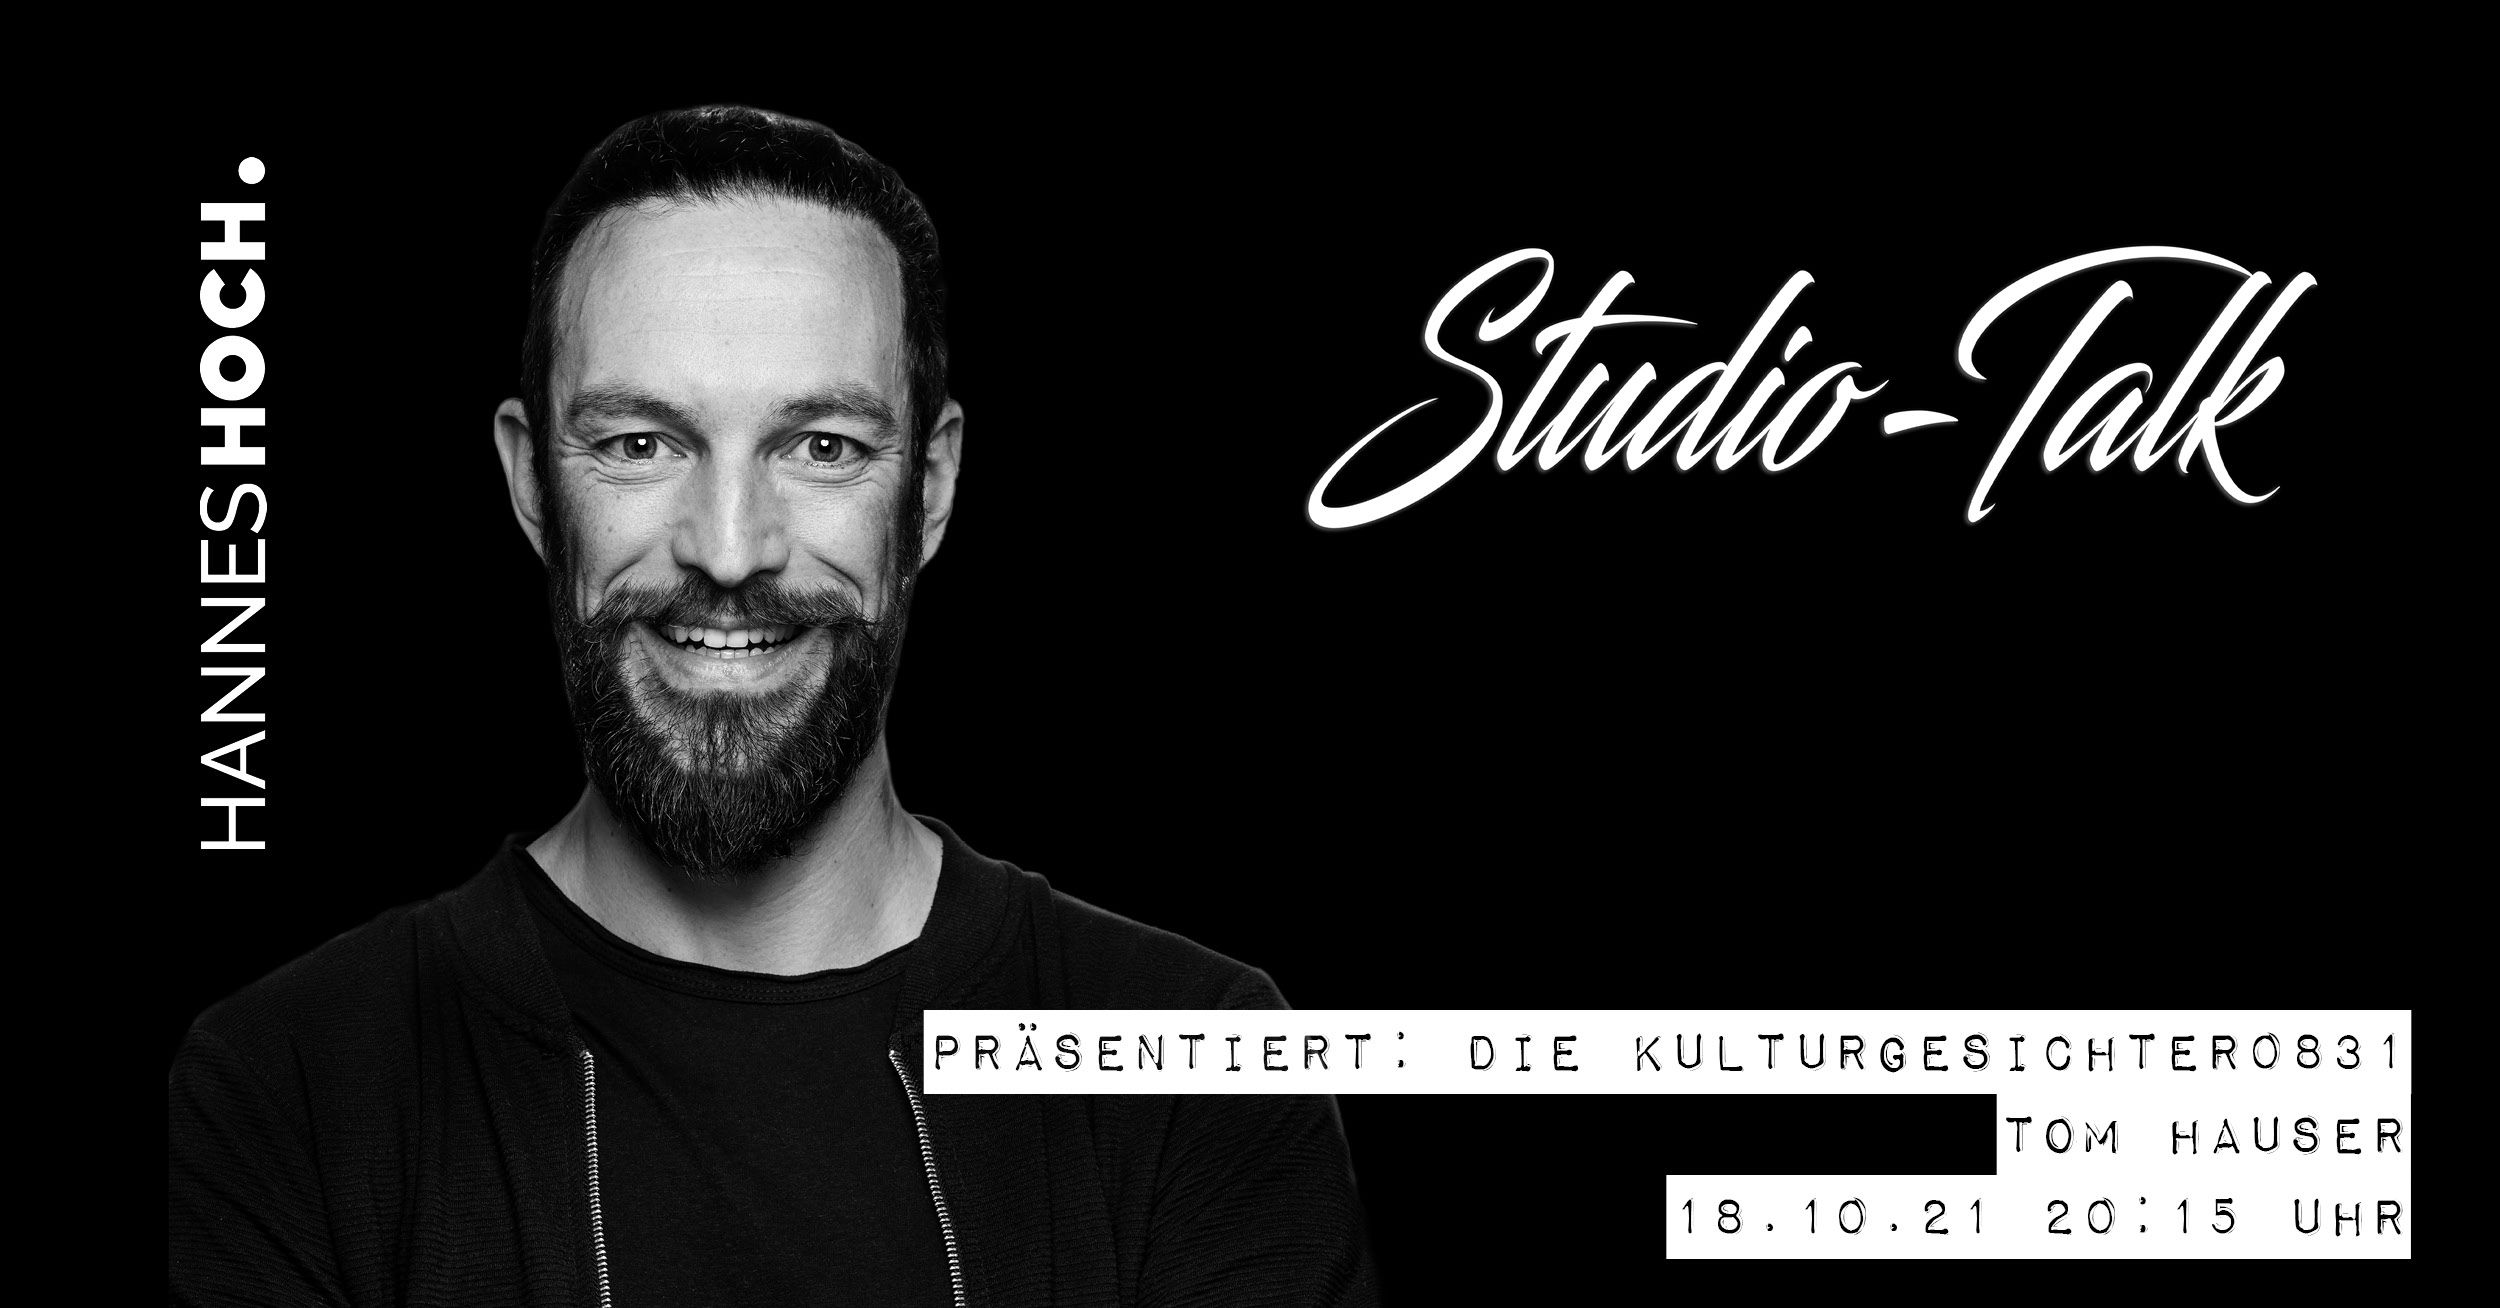 Kulturgesichter0831: Studio-Talk mit Tom Hauser